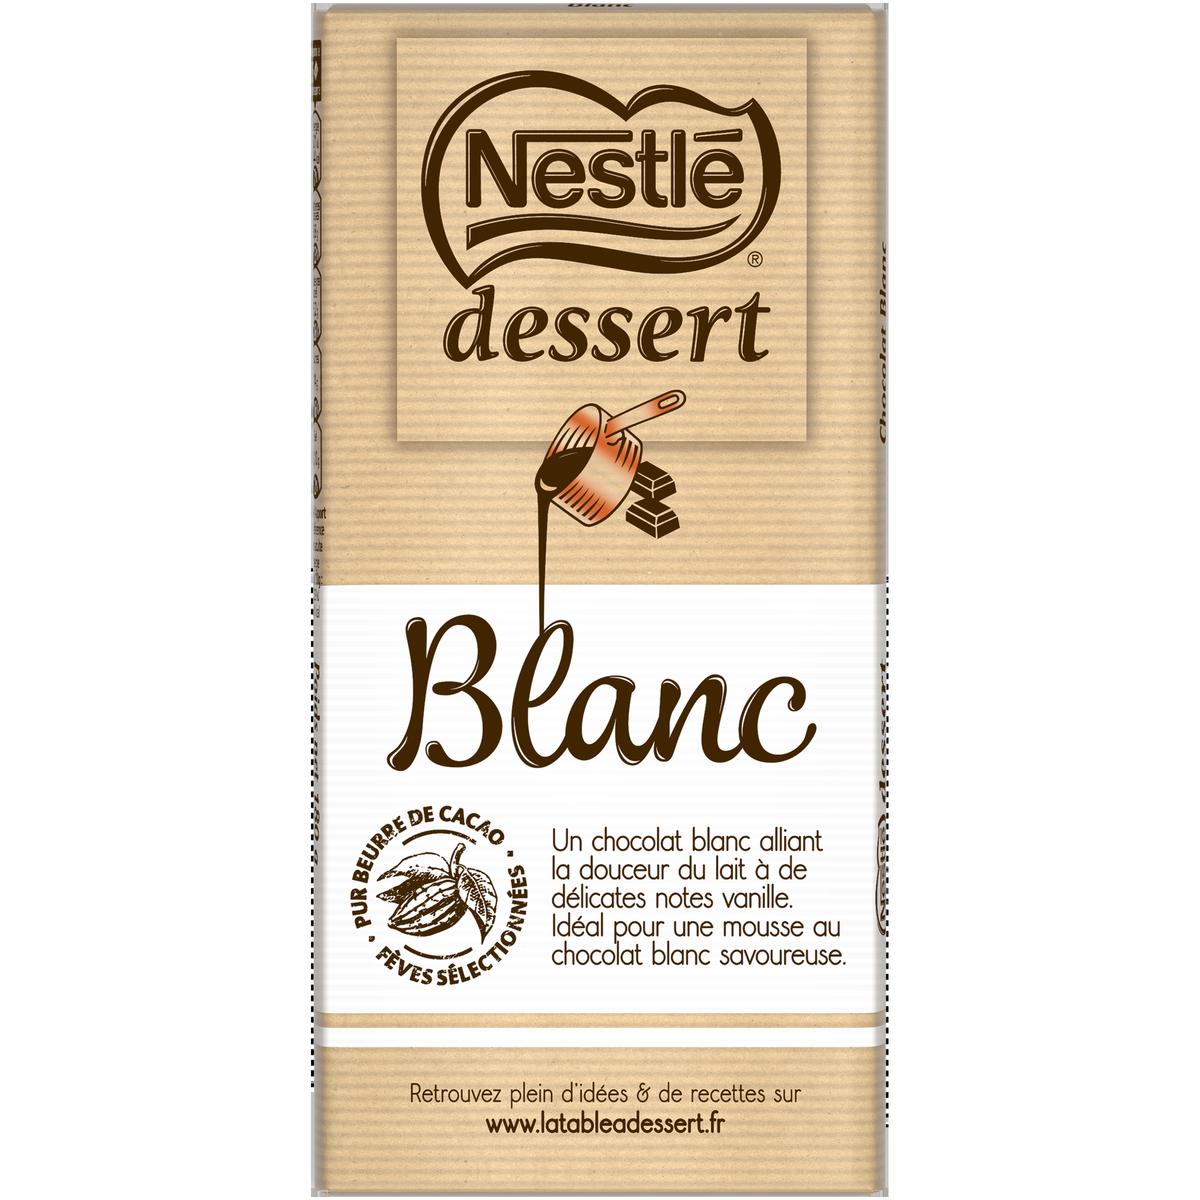 Achat / Vente Nestlé Dessert Chocolat pâtissier noir, Lot de 2x205g